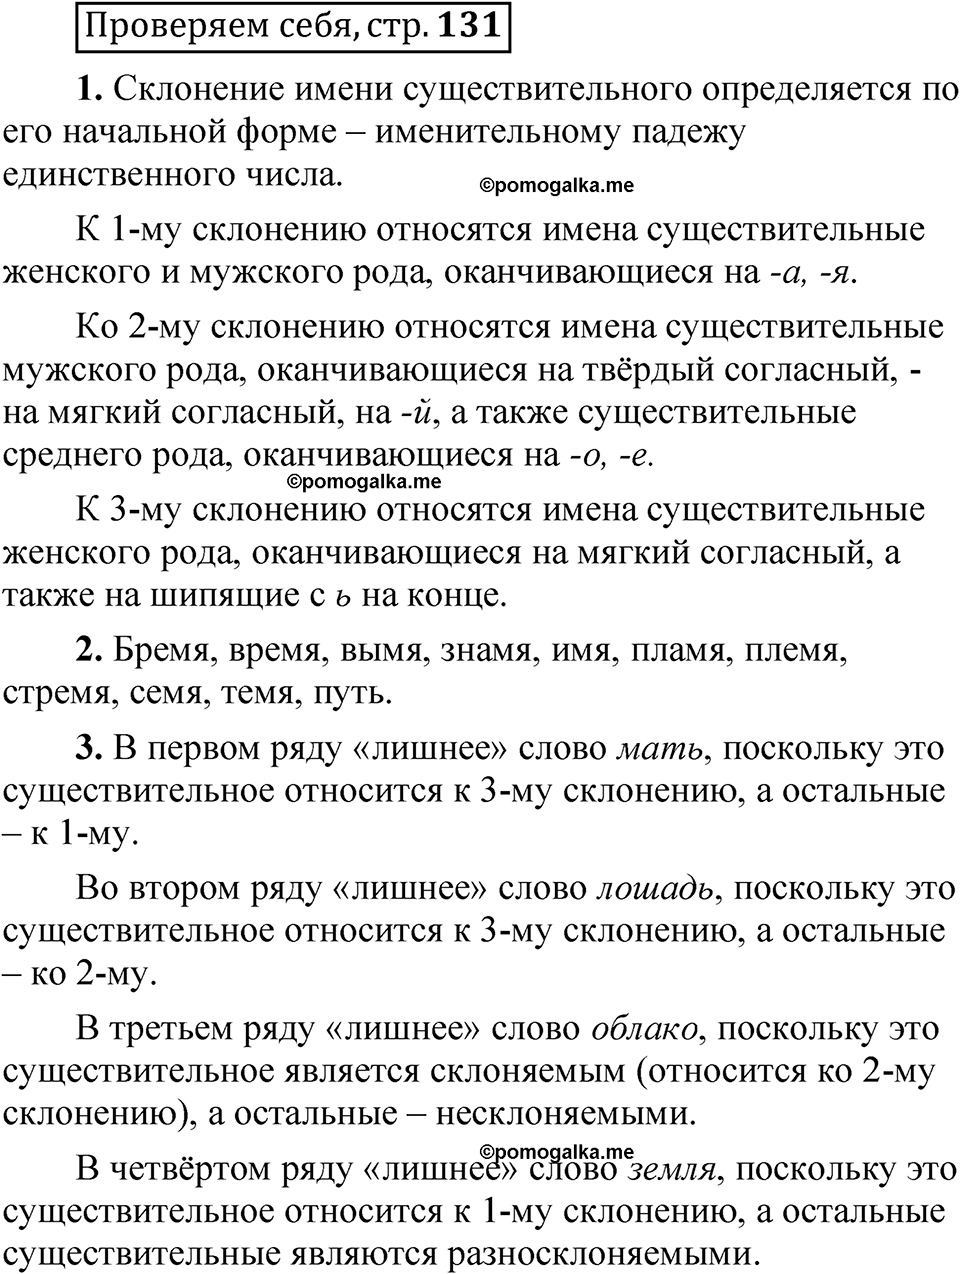 страница 131 Проверяем себя русский язык 5 класс Быстрова, Кибирева 2 часть 2021 год